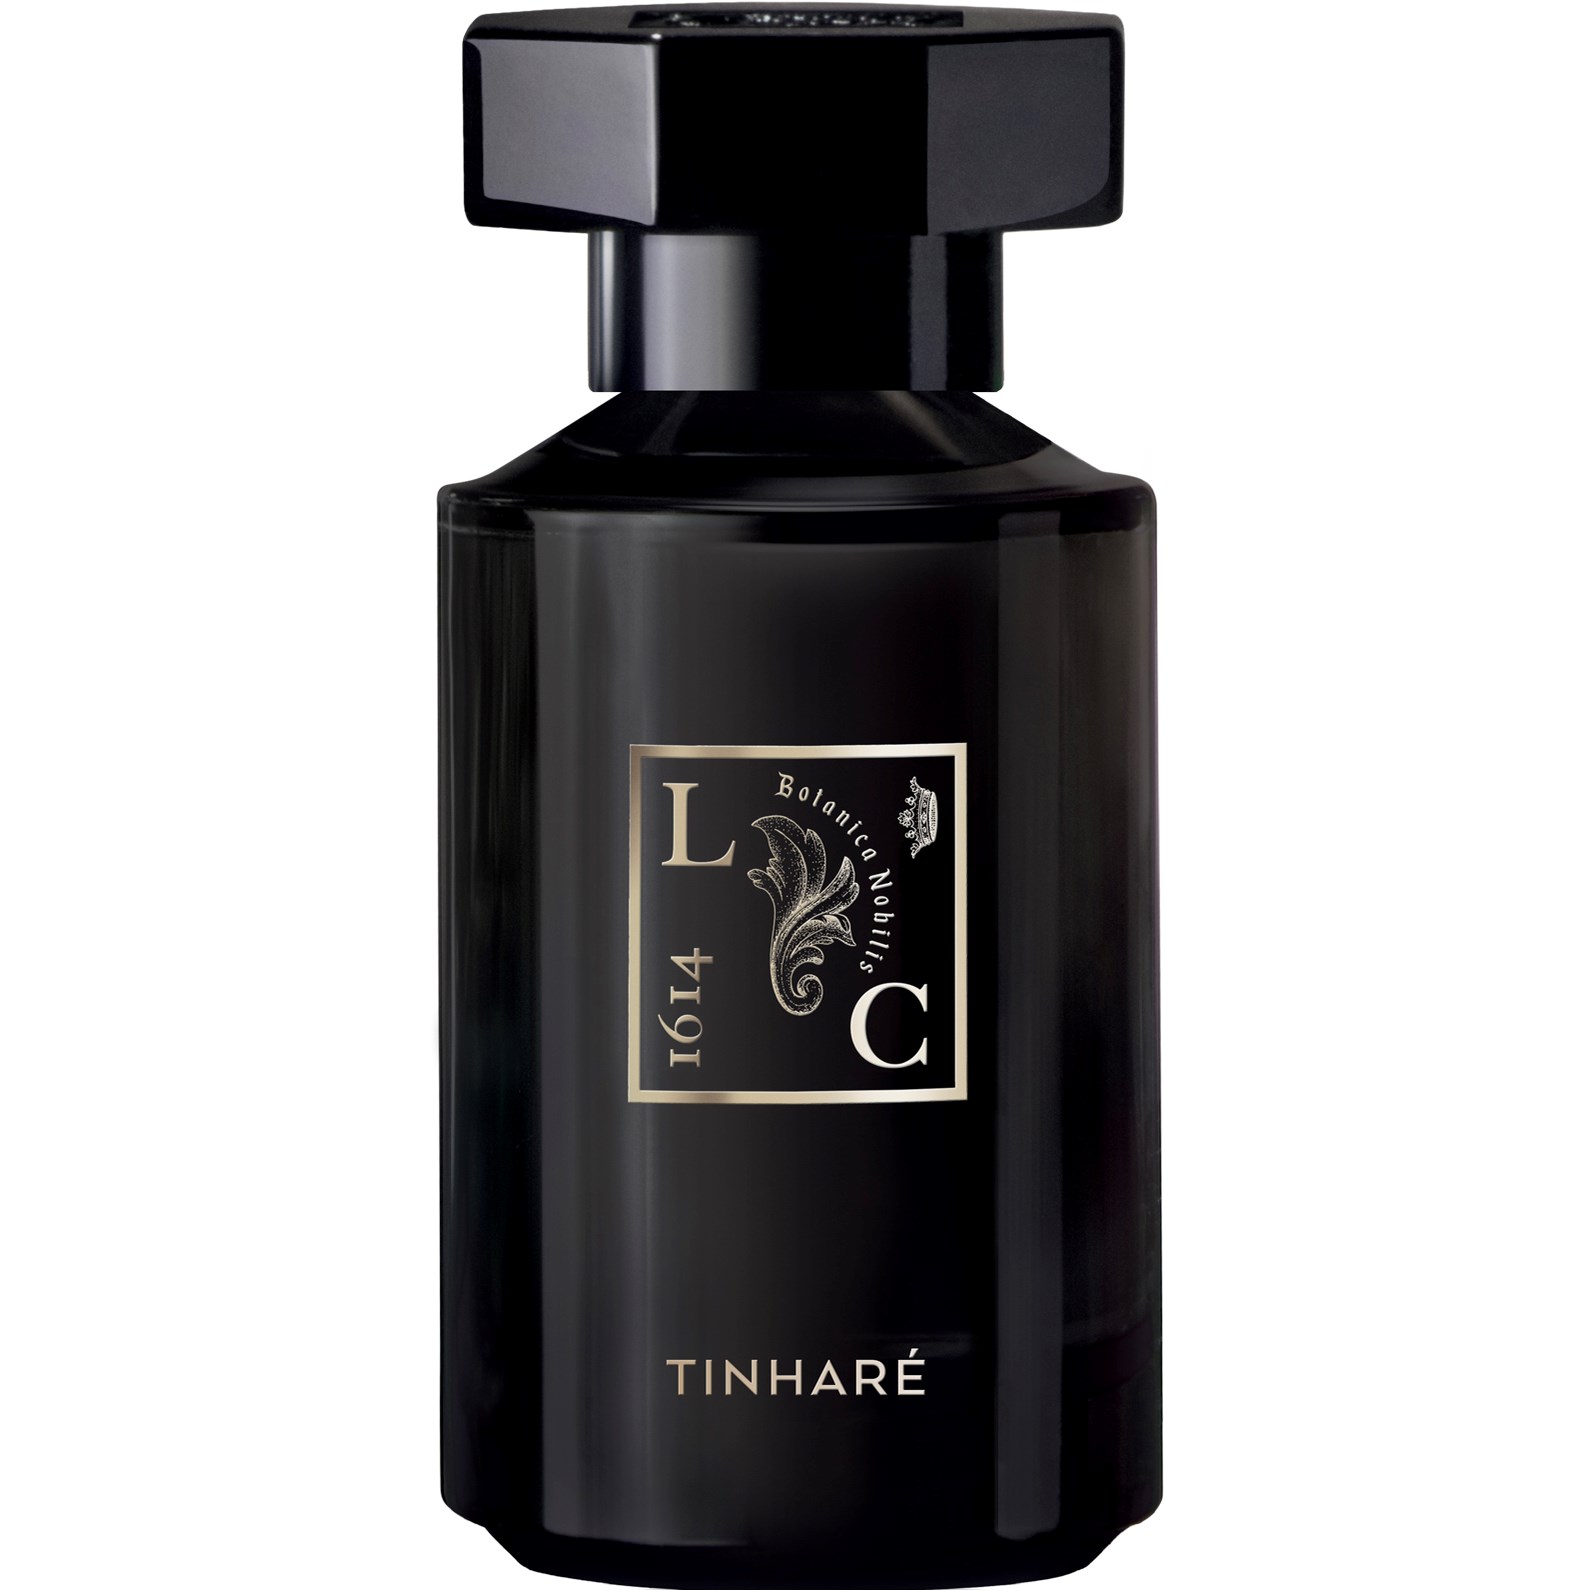 Le Couvent Tinhare Remarkable Perfumes Eau de Parfum 50 ml